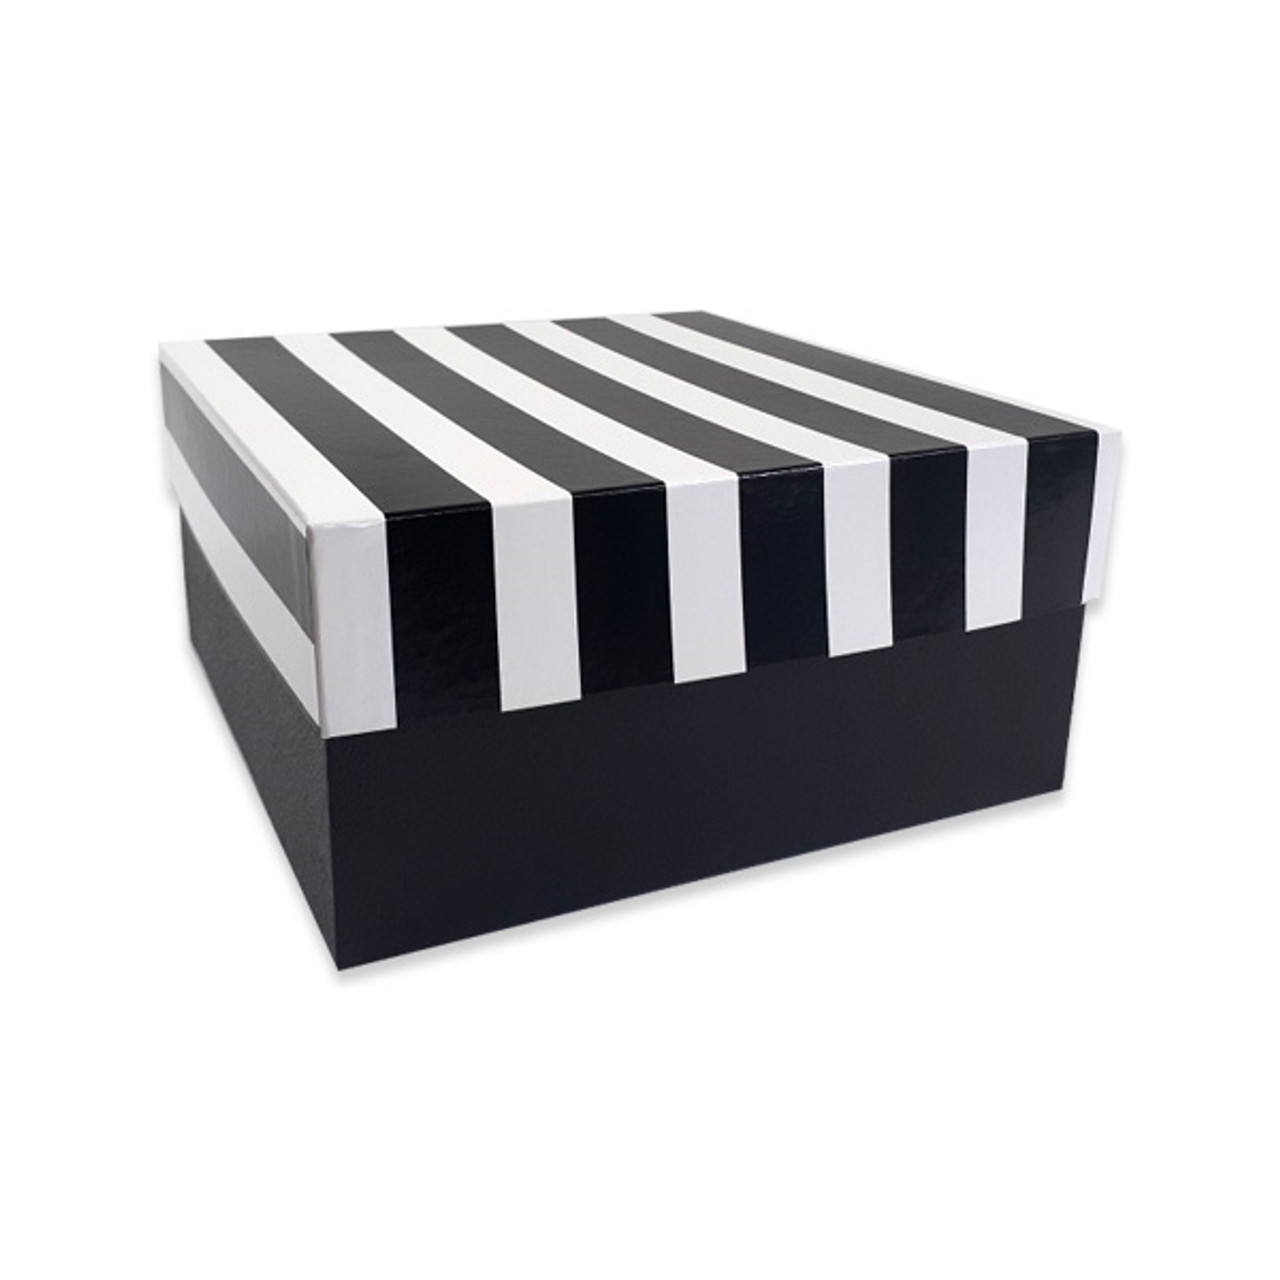 Timeless Black & White Gift Box